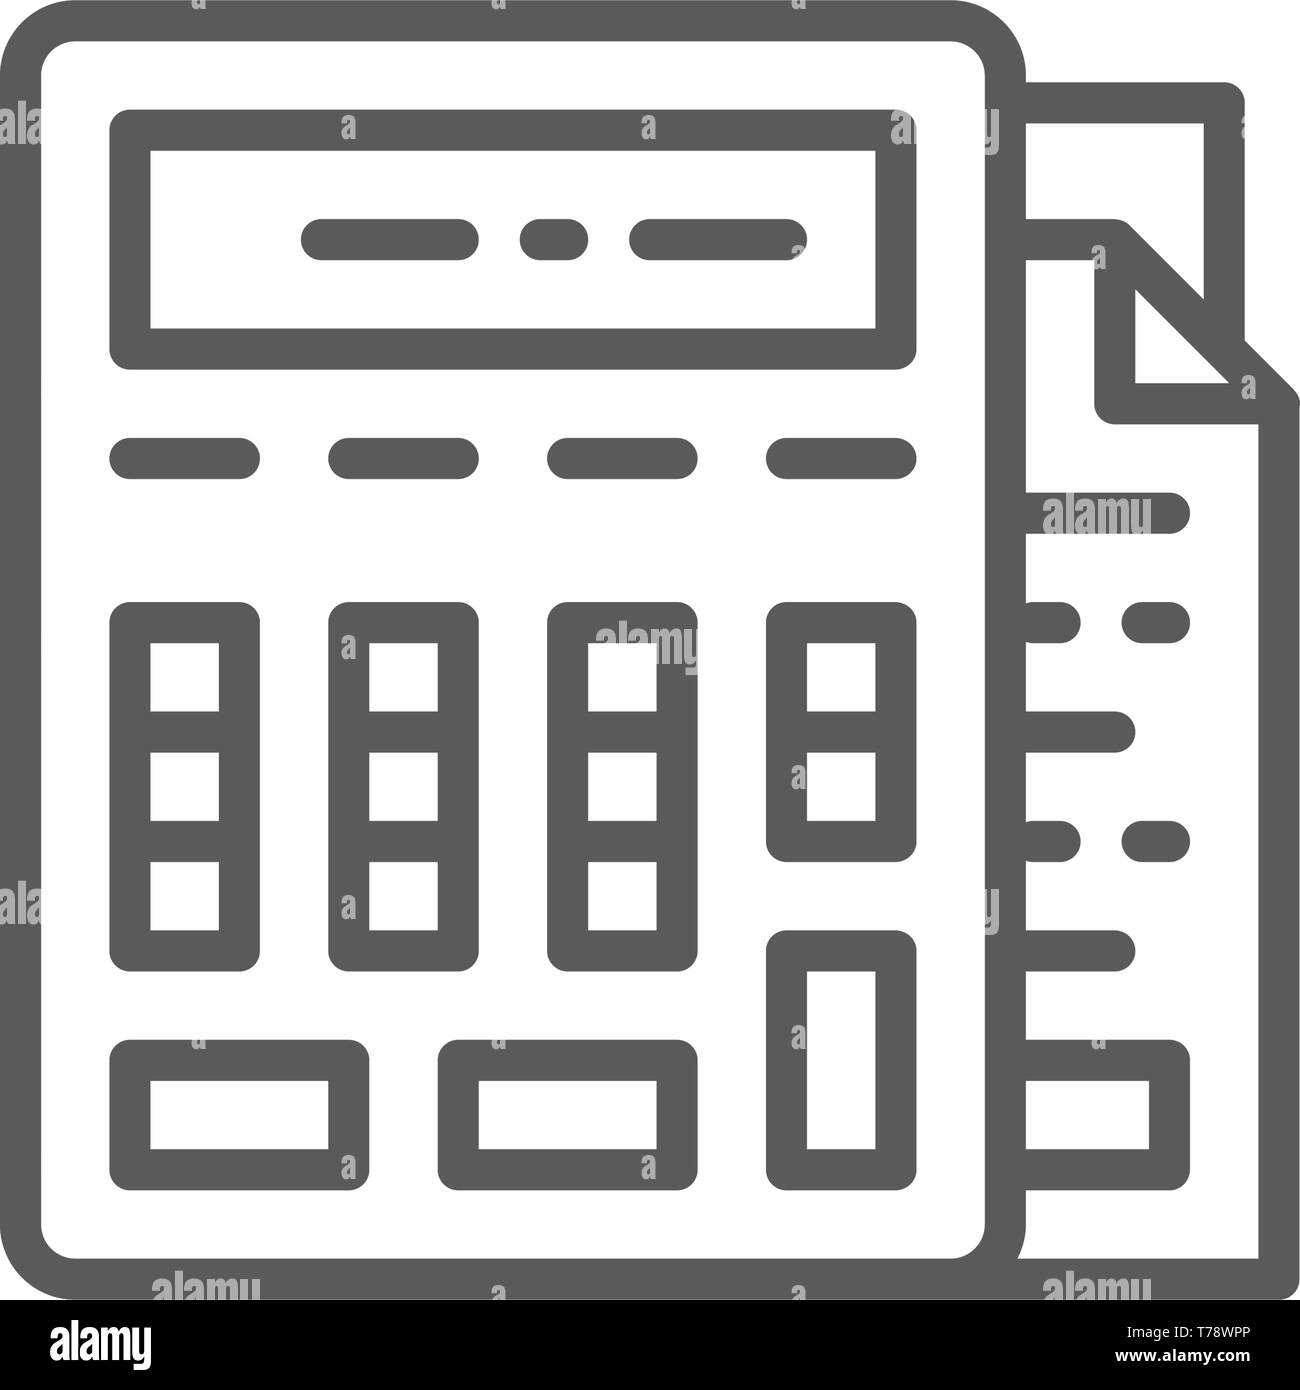 Taschenrechner mit Dokumenten, Buchhaltung, Rechnungswesen Symbol Leitung  Stock-Vektorgrafik - Alamy